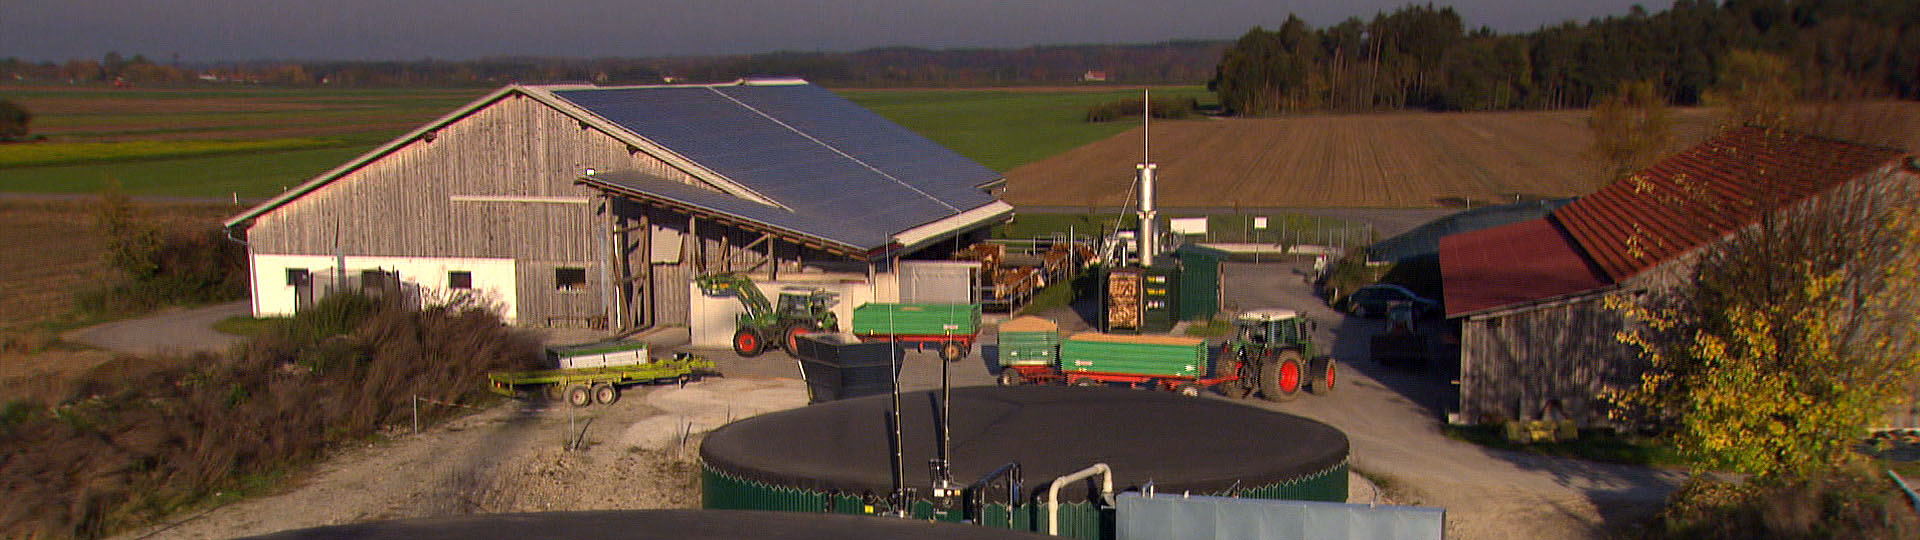 Media Future Team - Produktfilm Biogas-Tools: Bauernhof in Hurlach aus Vogelperspektive